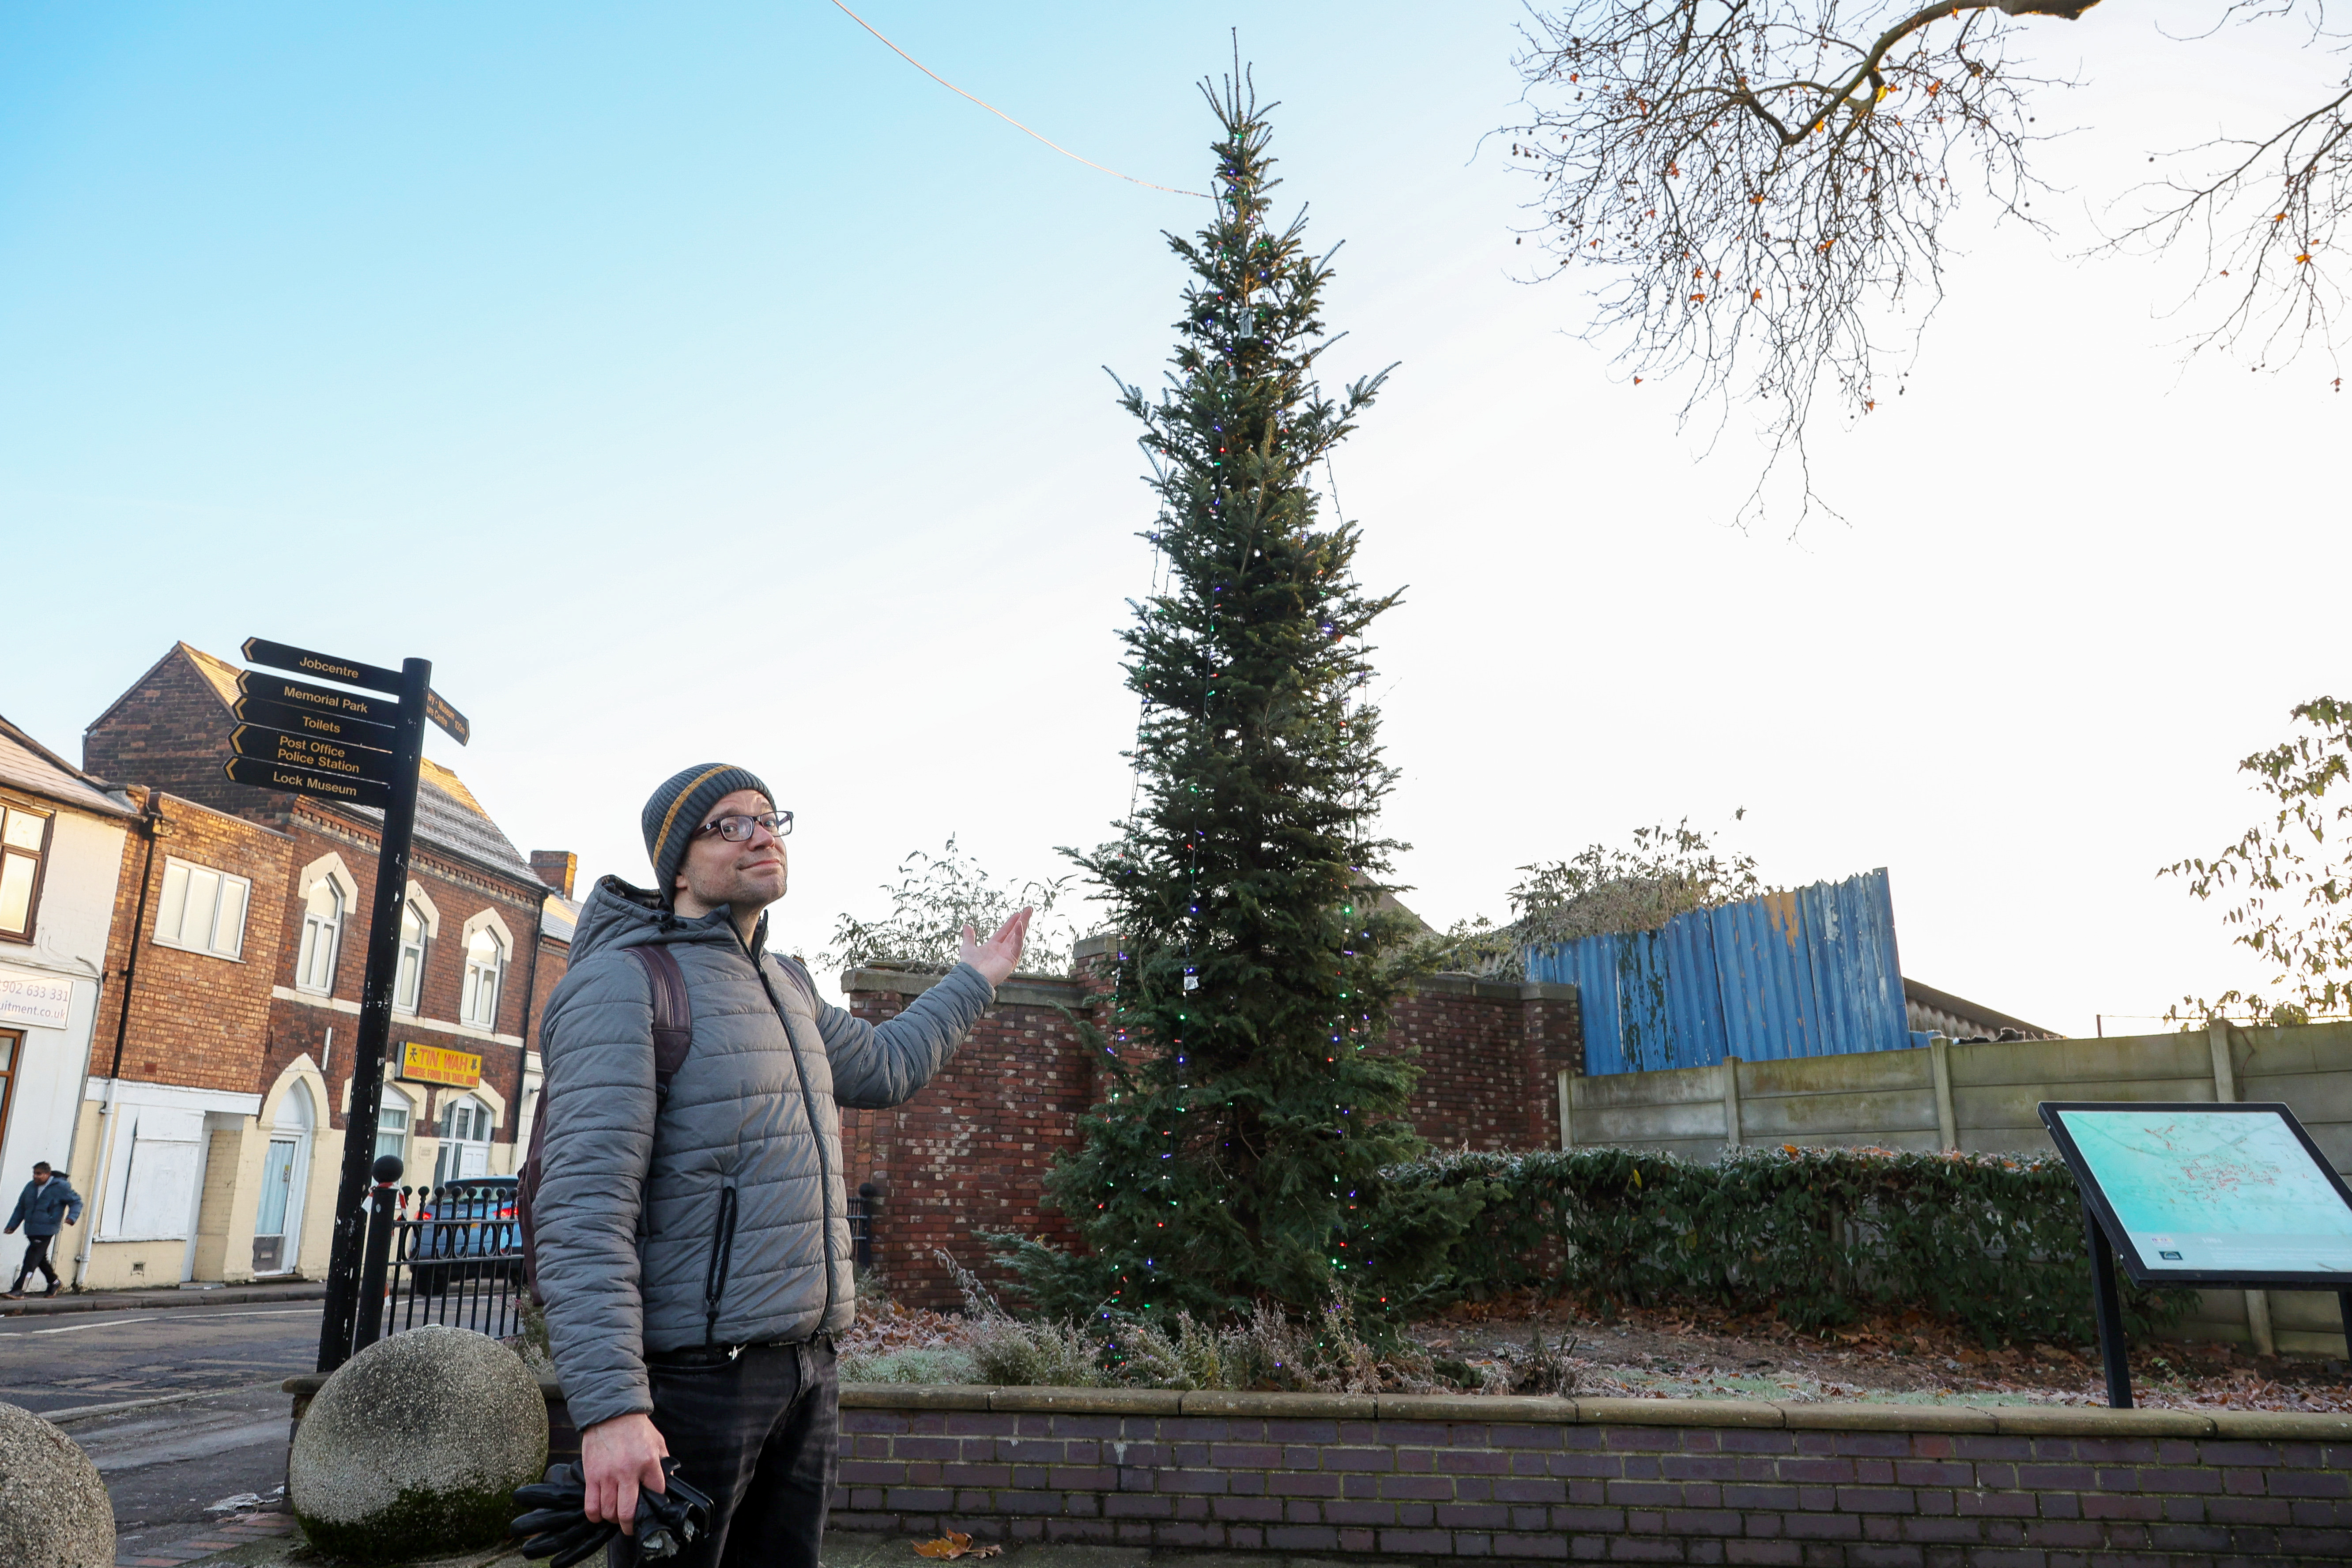 Unterdessen verärgerte auch ein dürrer Weihnachtsbaum im nahegelegenen Willenhall die Anwohner